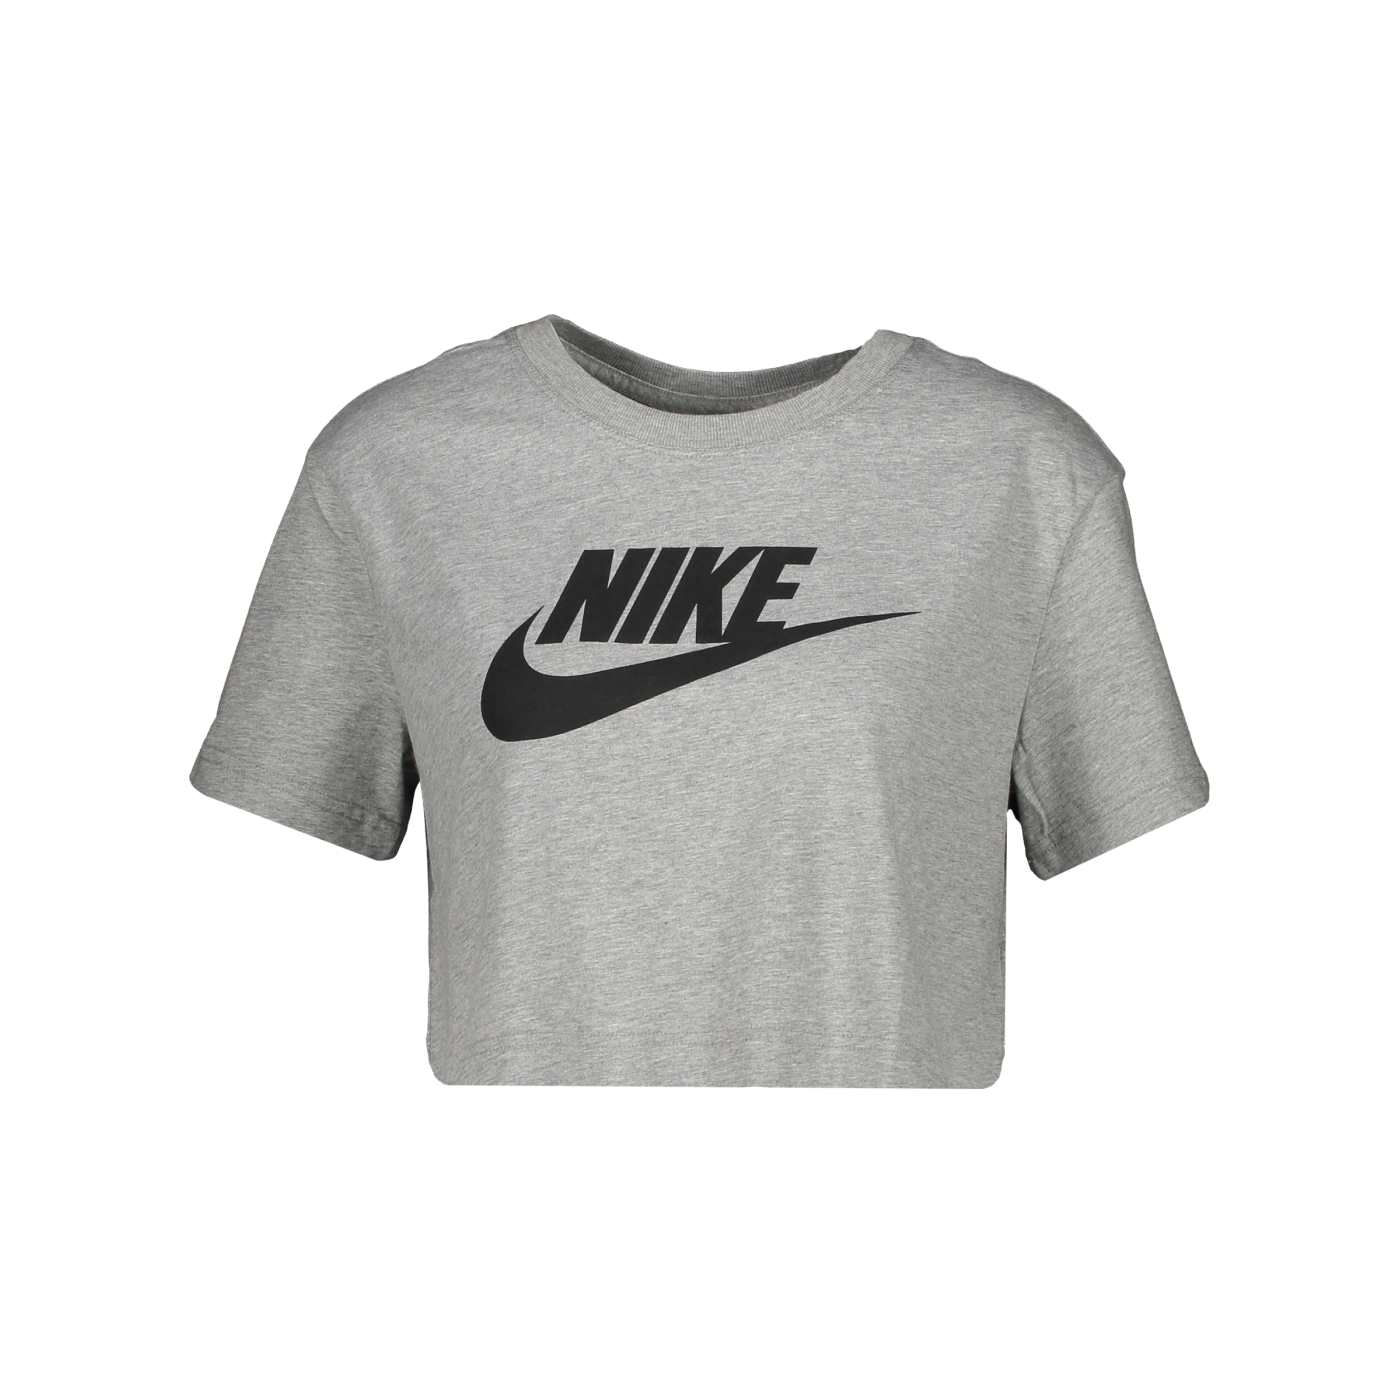 Nike Croped T-Shirt Damen Grau F063 |